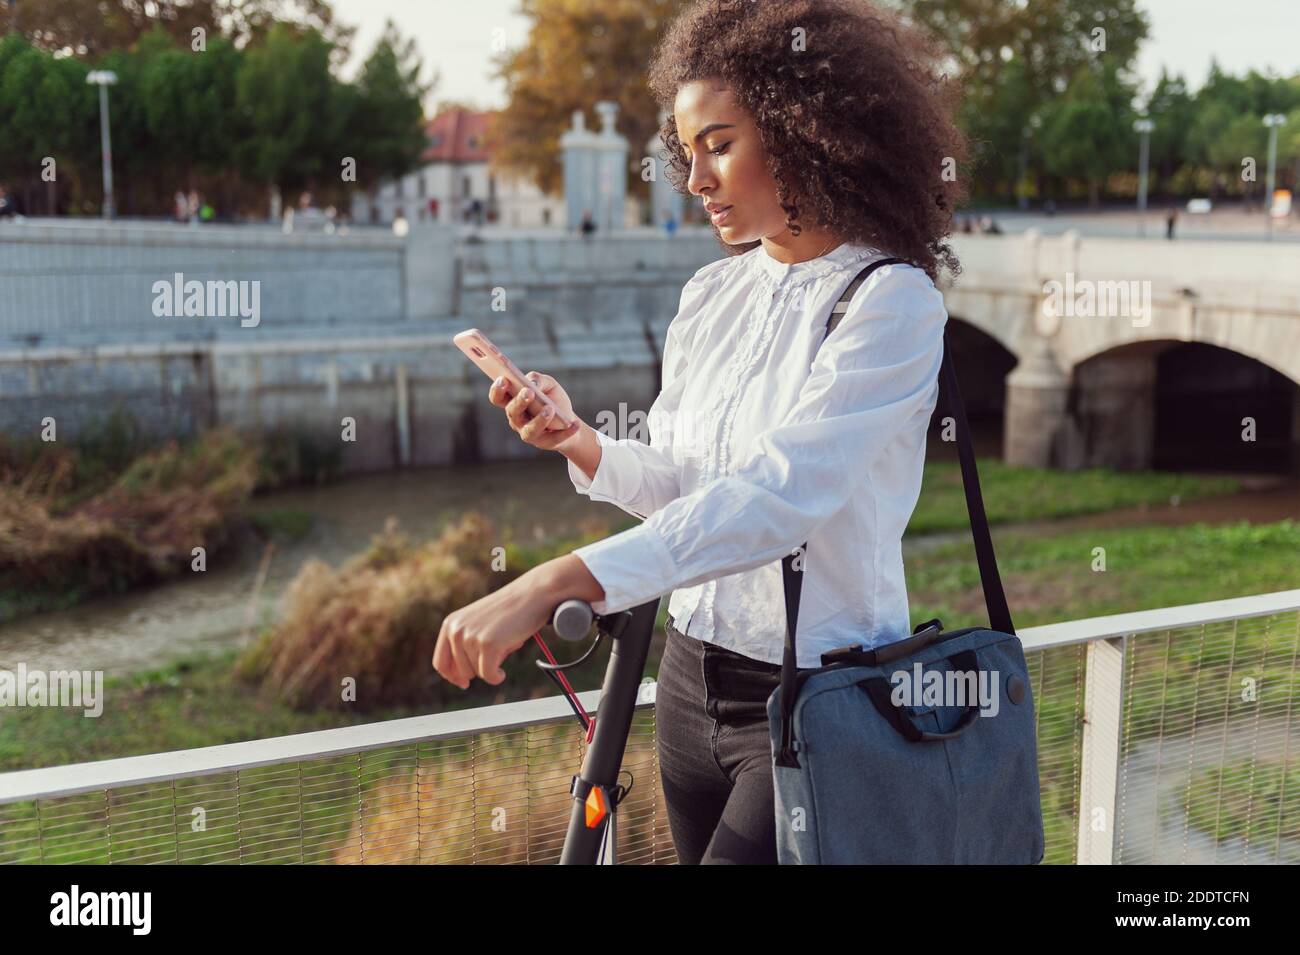 Giovane donna scarica l'app per usare lo scooter elettrico in città strada sano stile di vita sostenibile stile di vita Foto Stock